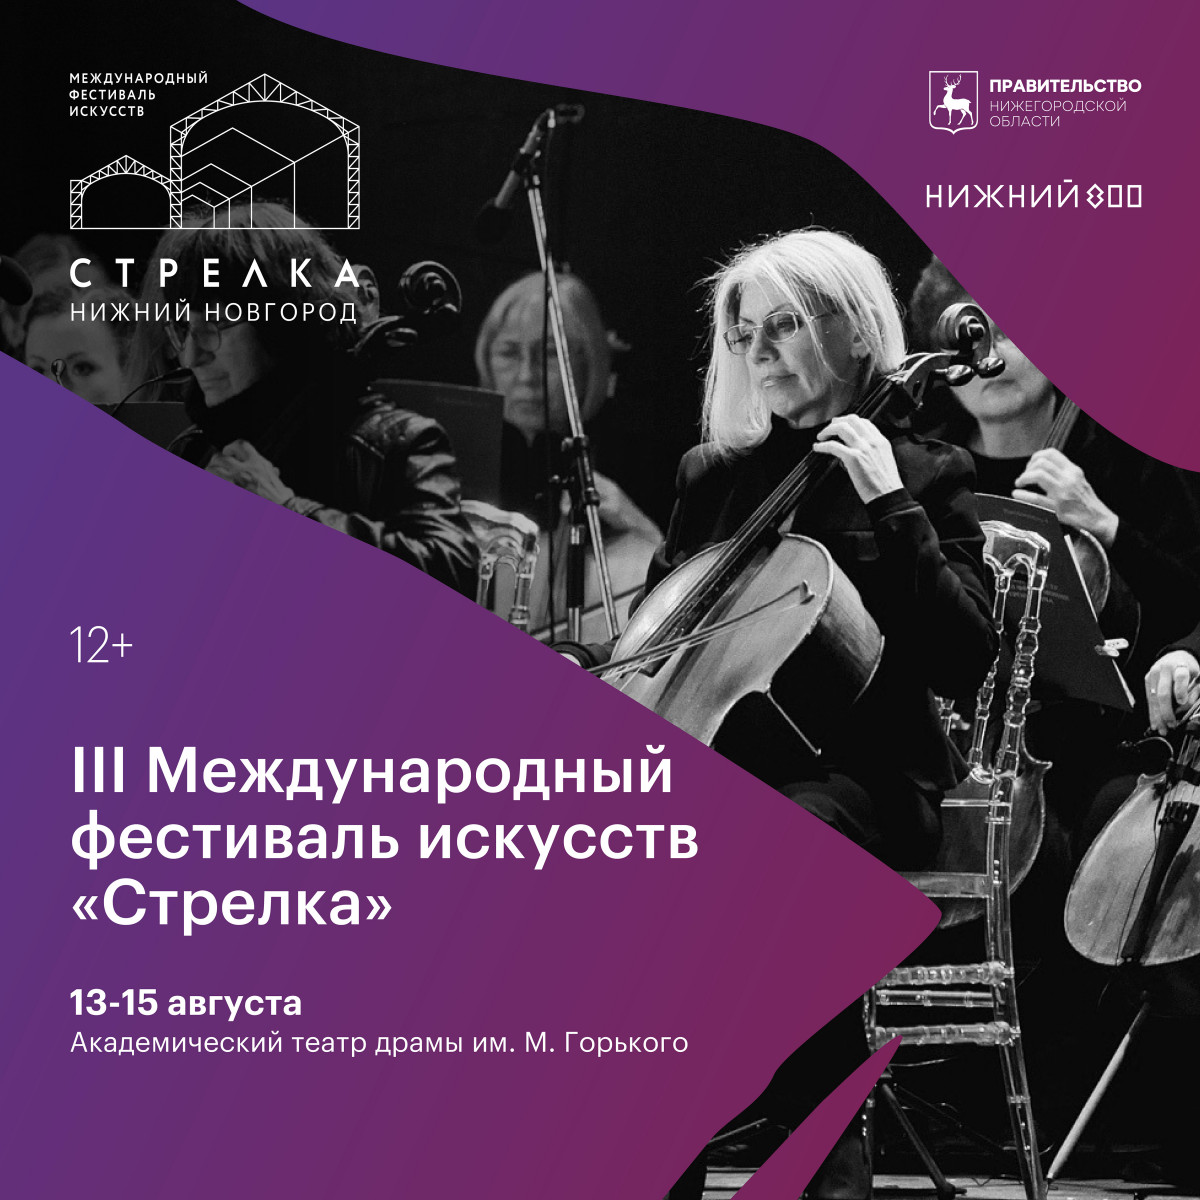 Кульминация фестиваля «Стрелка» состоится в Нижнем Новгороде с 13 по 15 августа